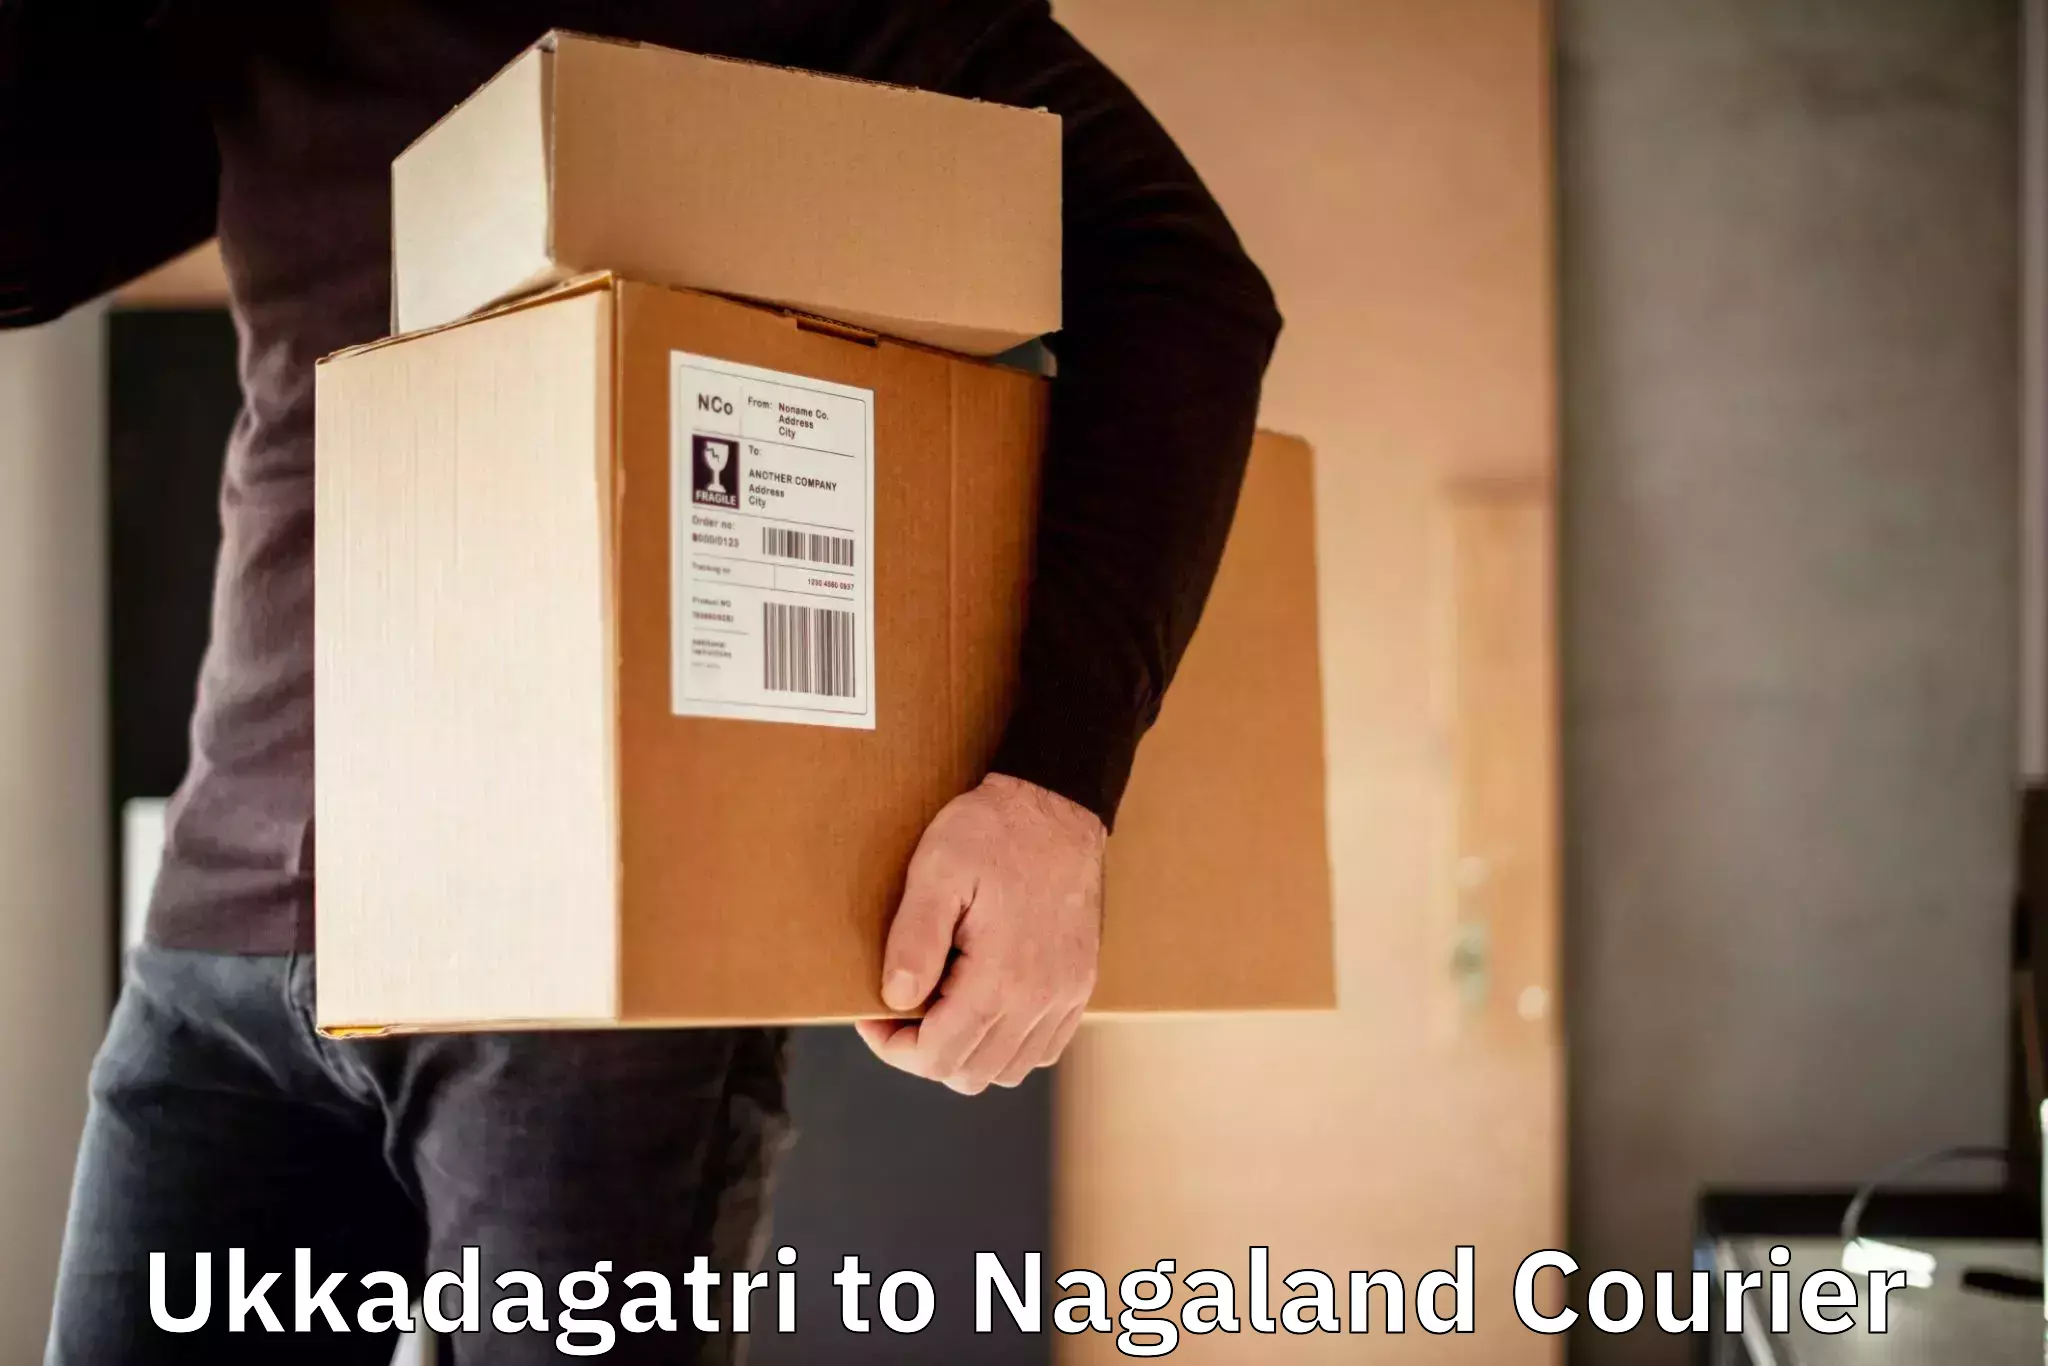 Courier app Ukkadagatri to Nagaland